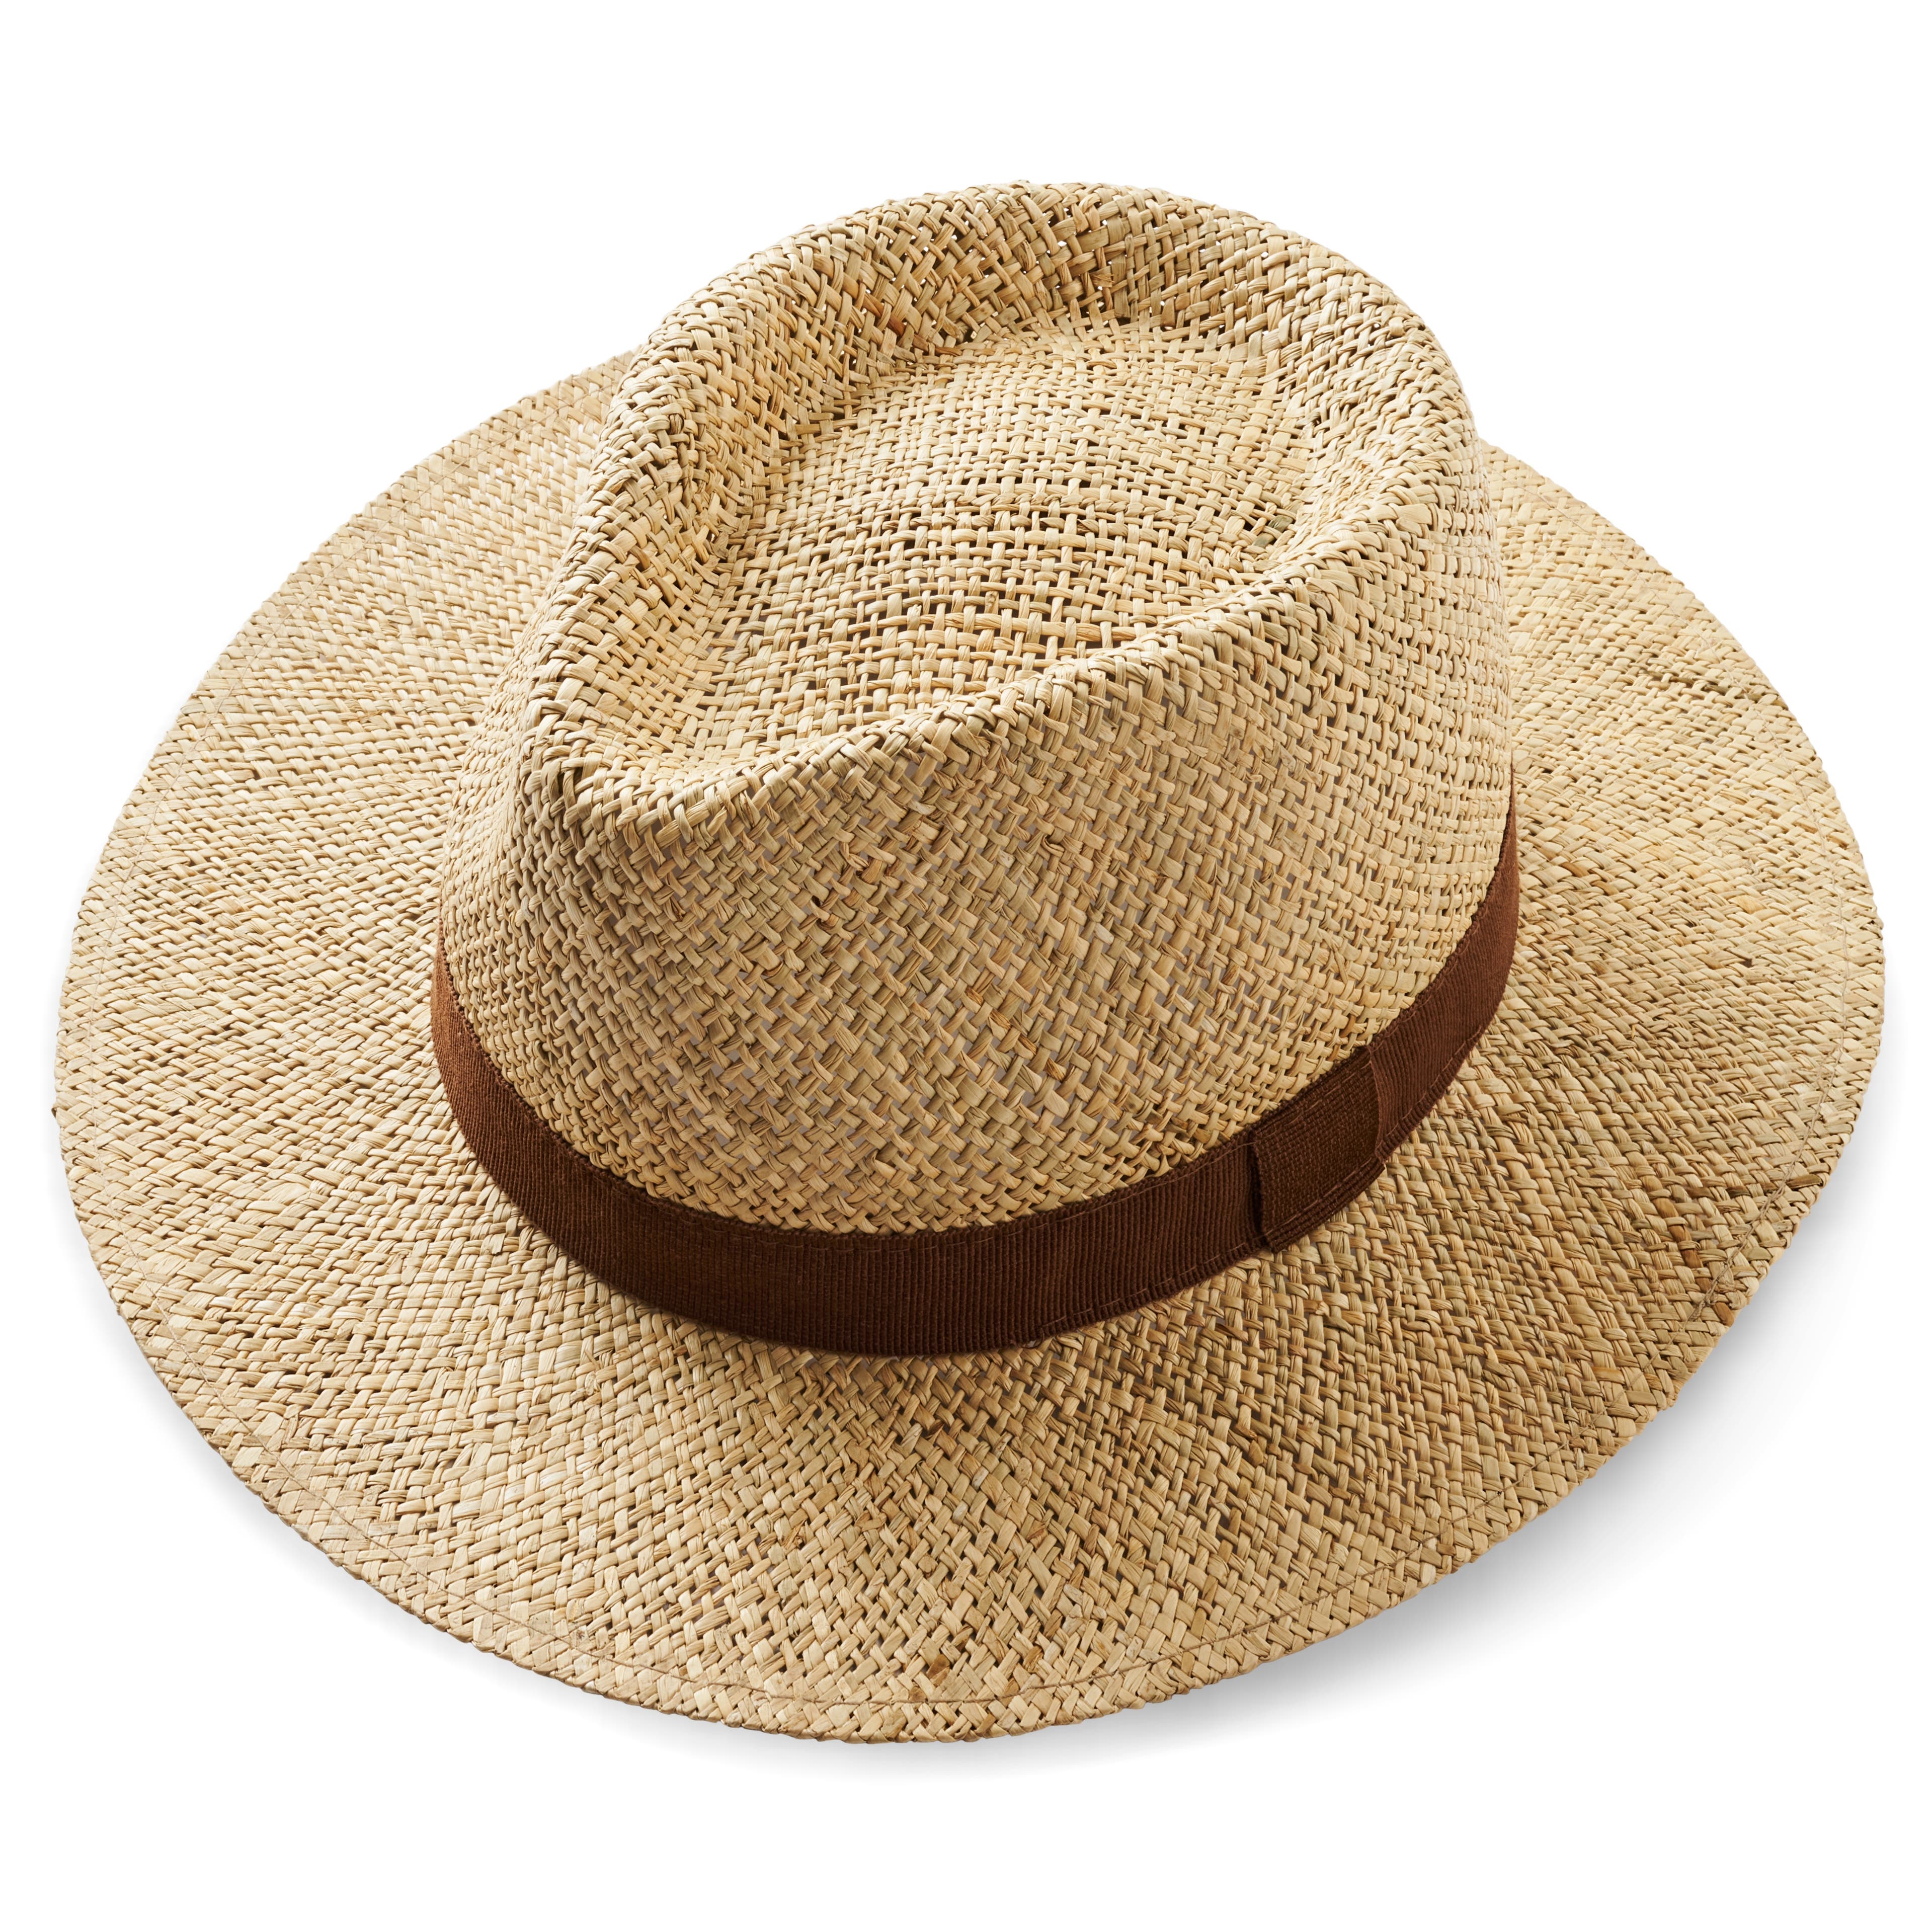 Chapeau Panama en paille naturelle avec ruban marron